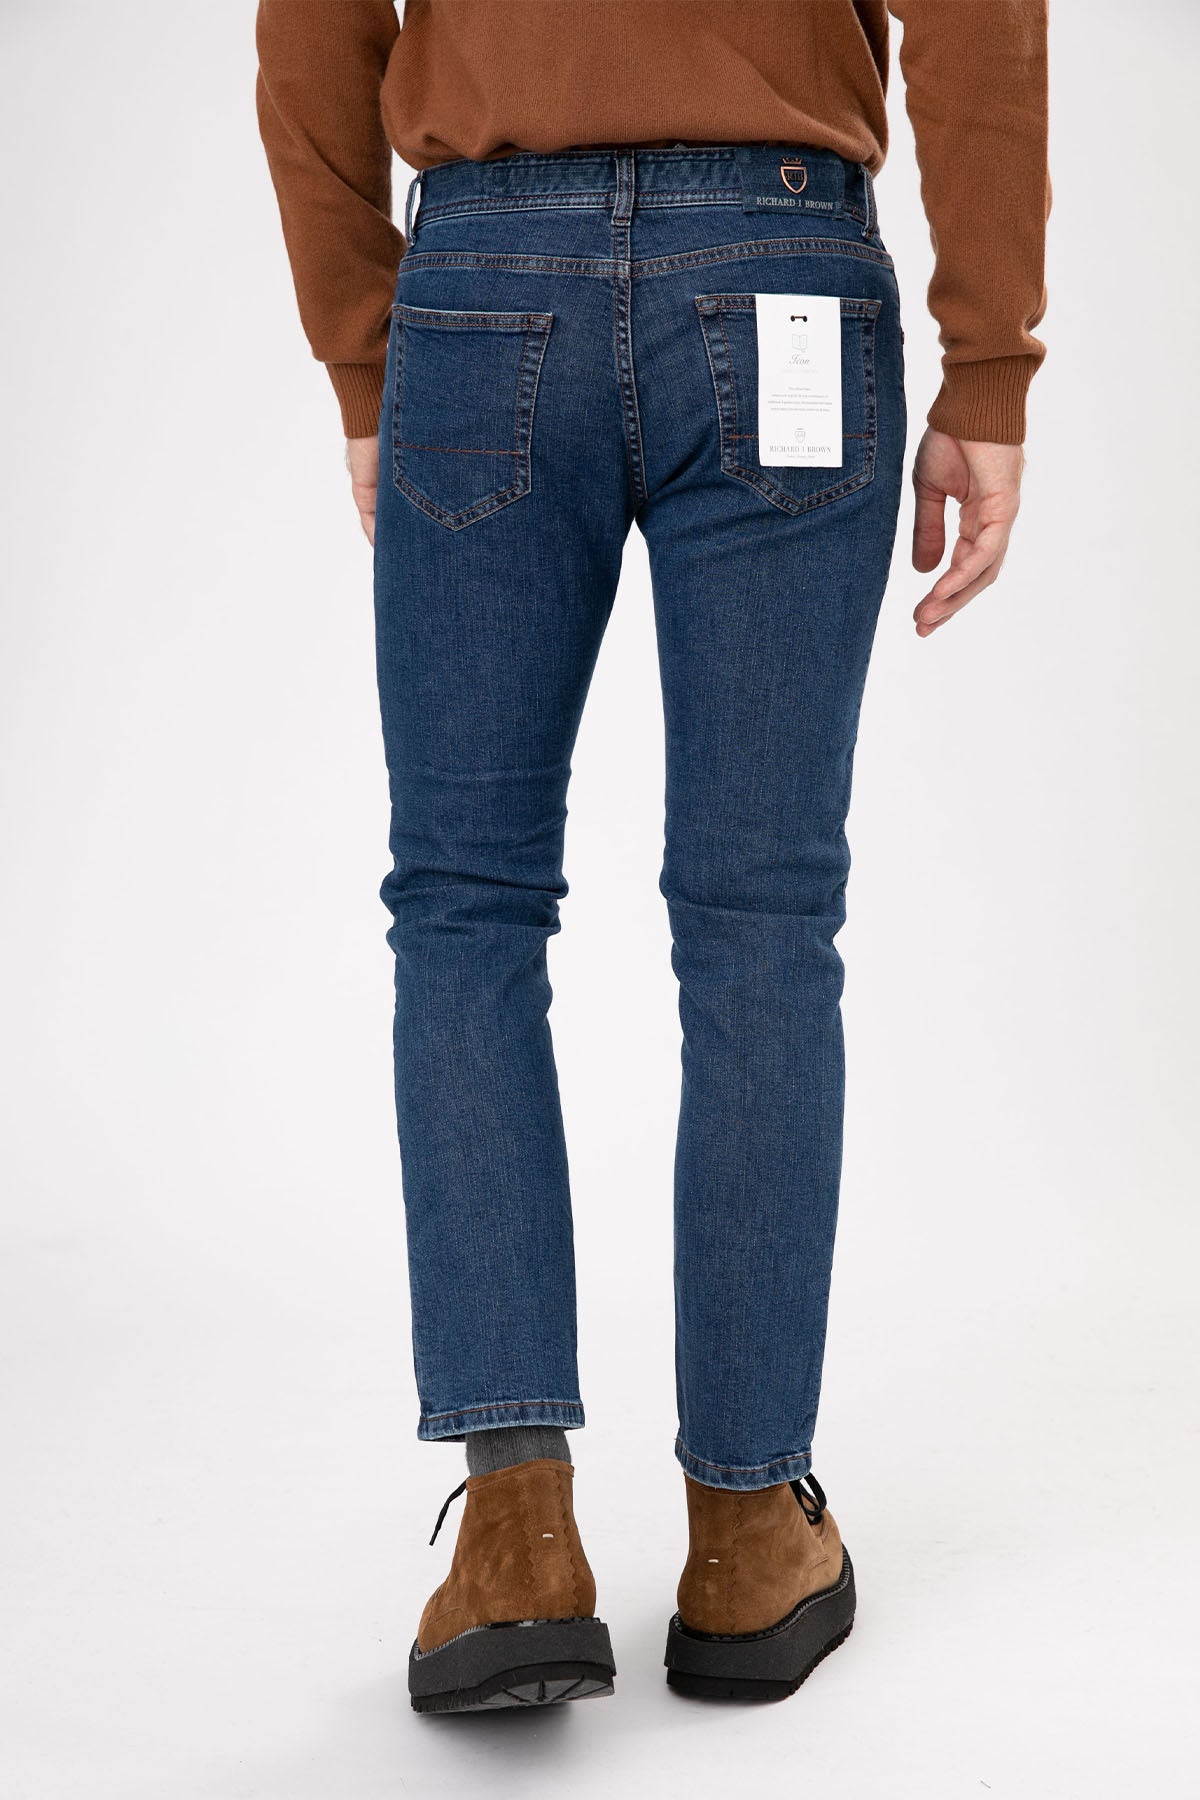 Richard J. Brown Tokyo Slim Fit Jeans-Libas Trendy Fashion Store